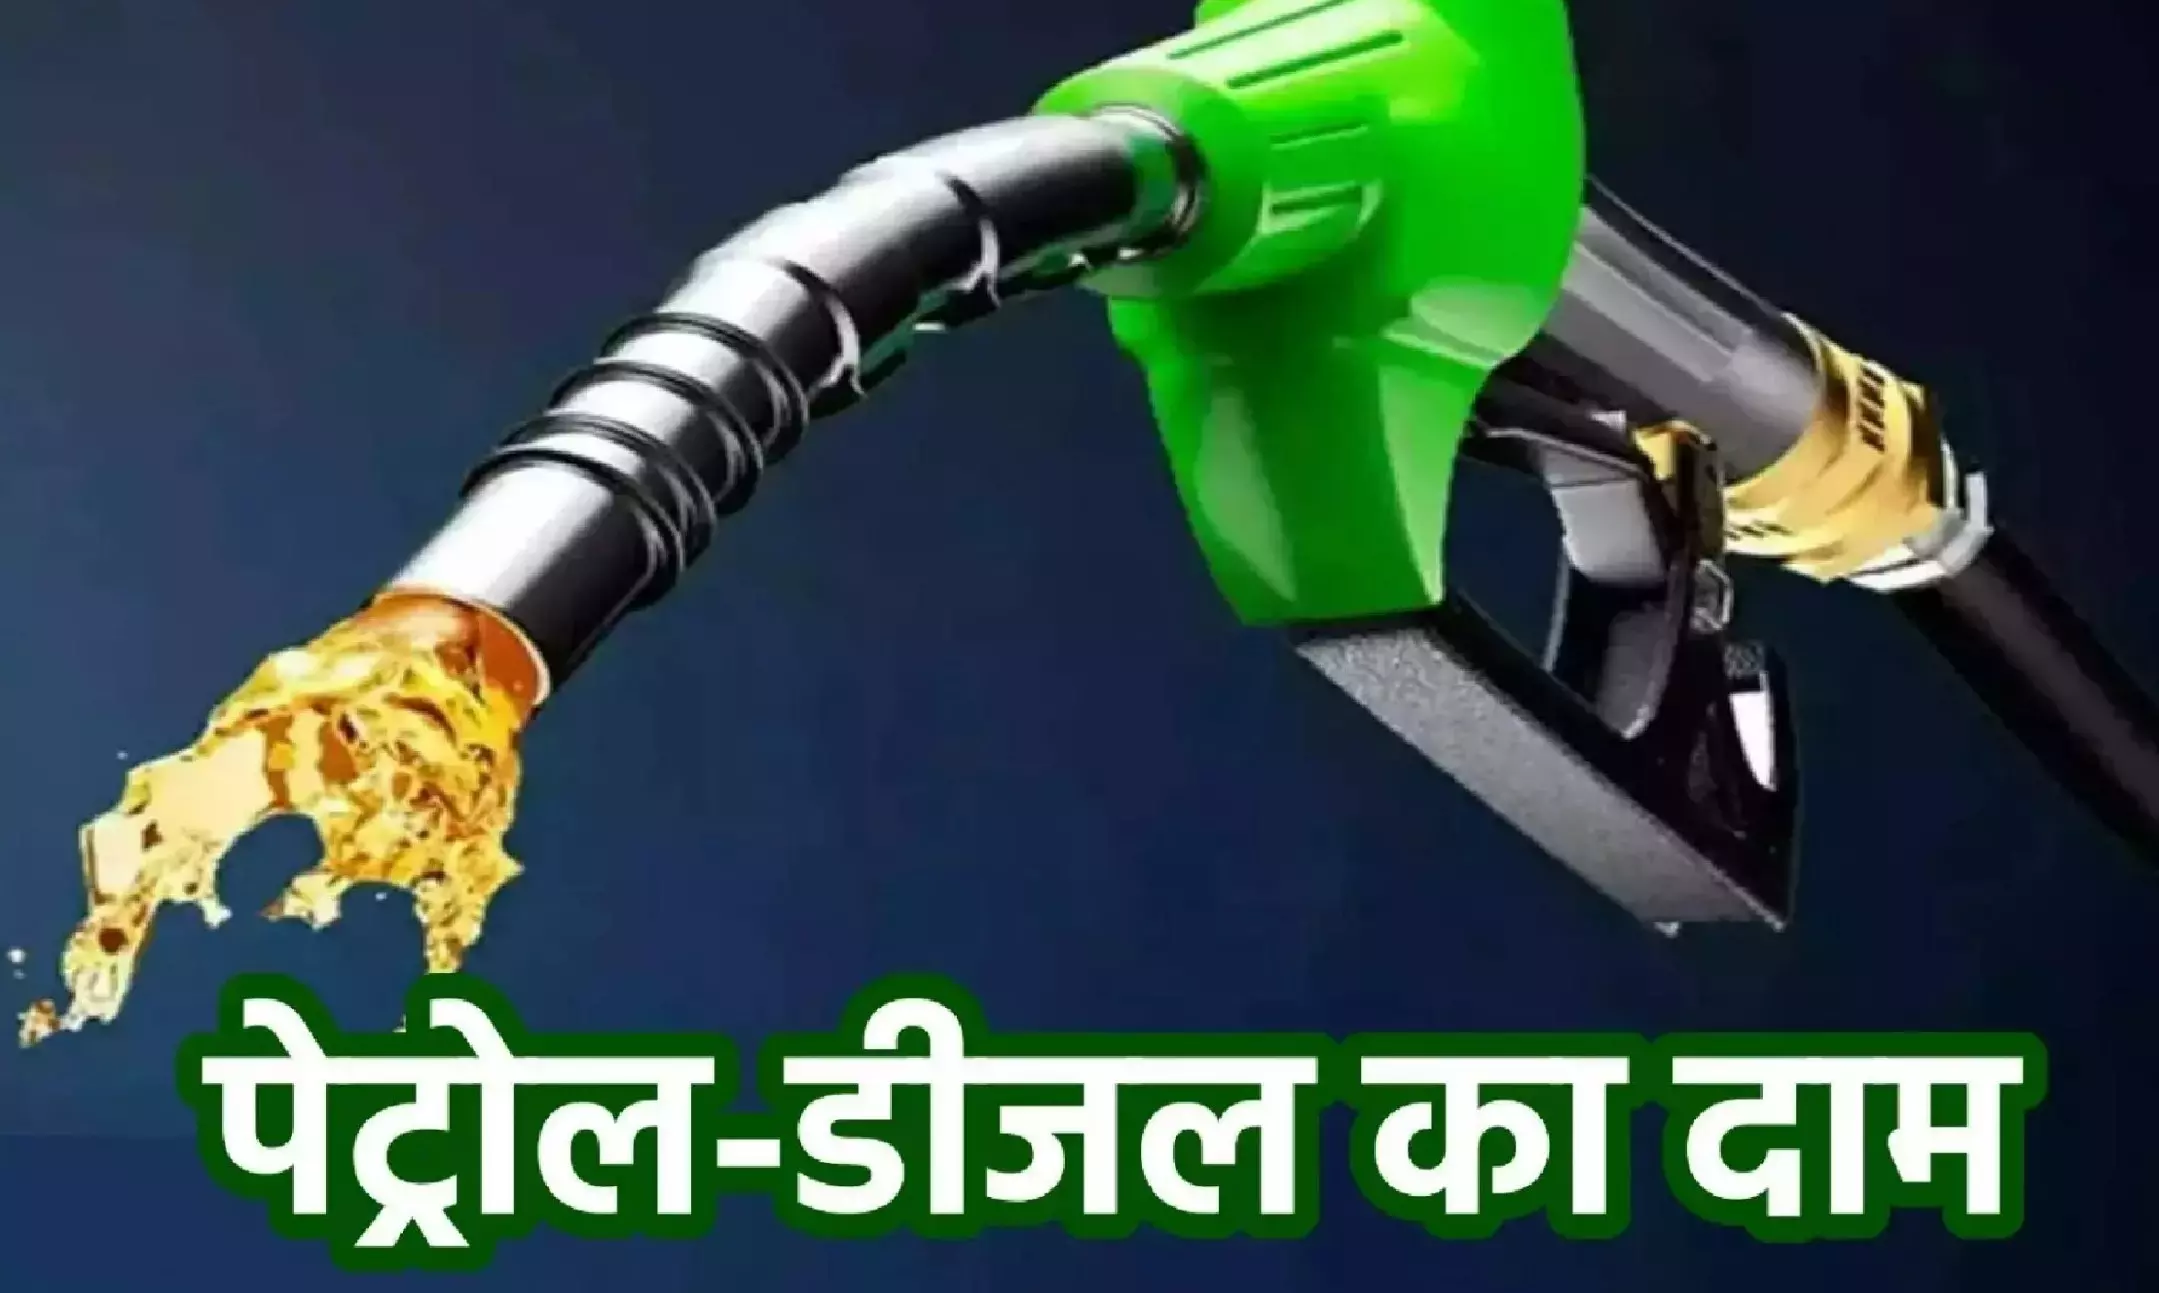 Petrol-Diesel Price: पेट्रोल और डीजल के दामों में आई गिरावट,जाने 1 लीटर की कीमत